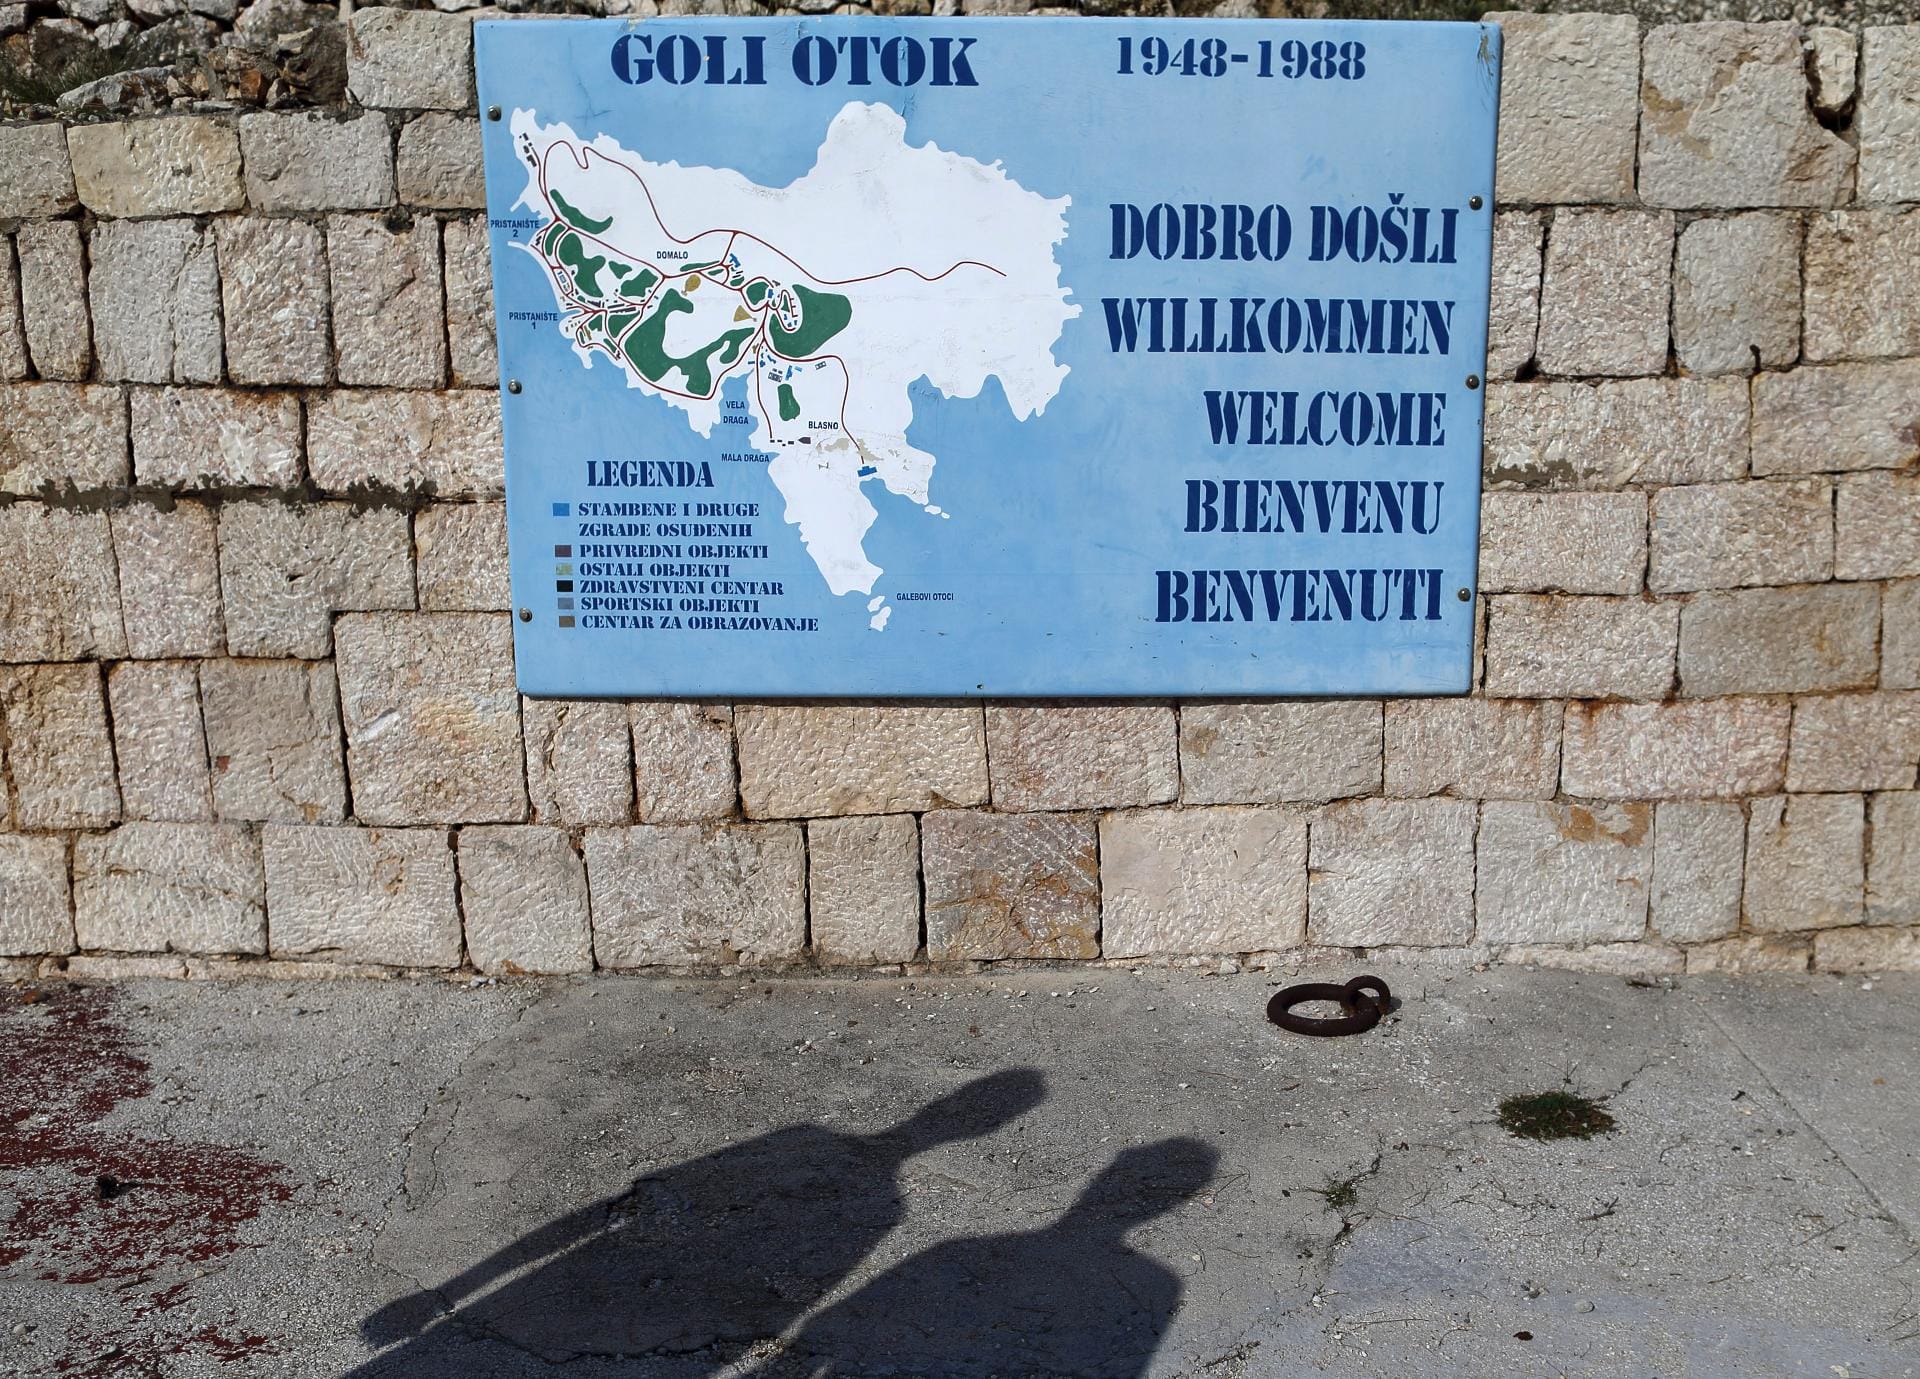 Dieses Schild heißt die Besucher auf der Insel Goli otok willkommen.